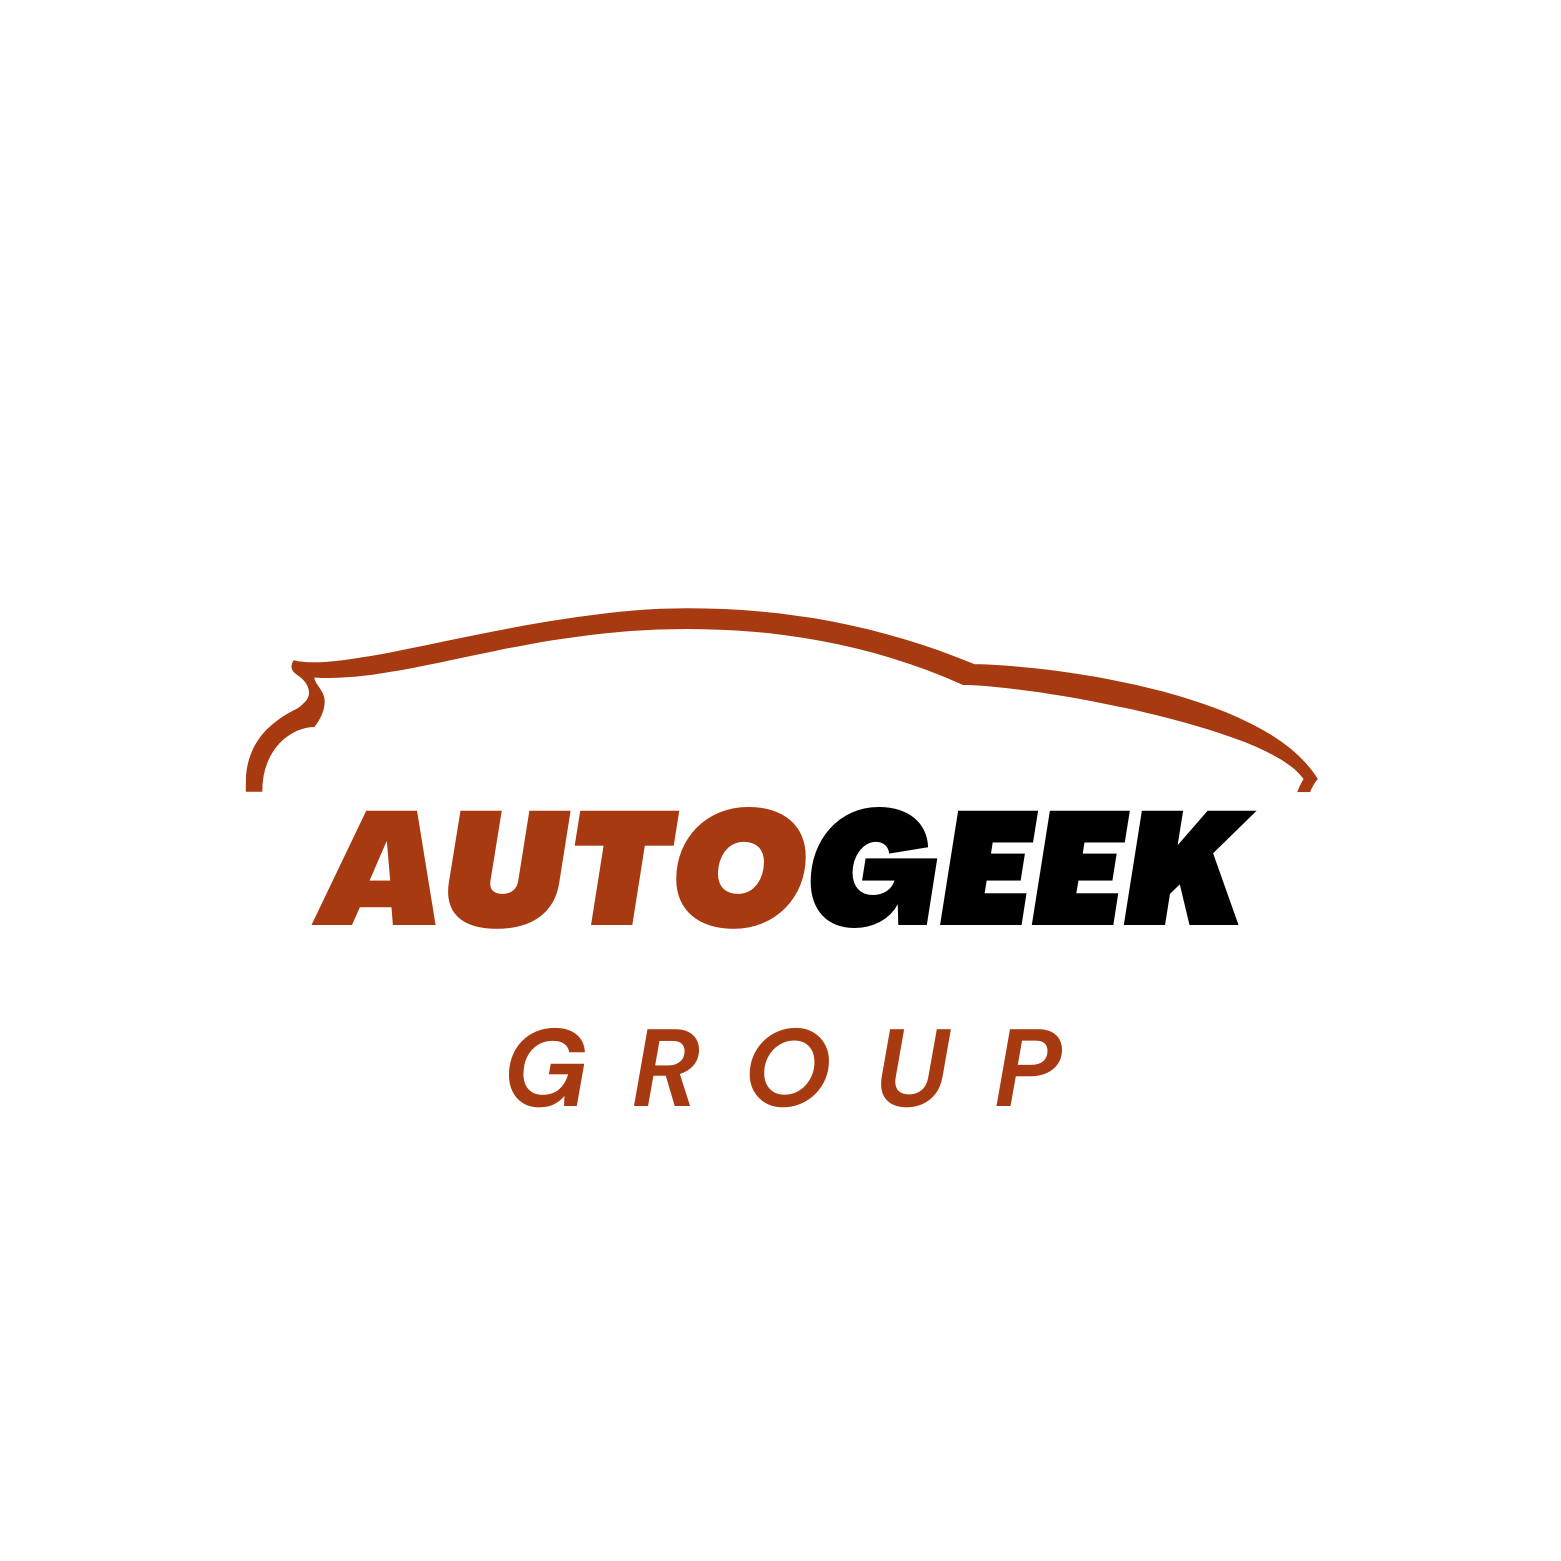 AutoGeek group